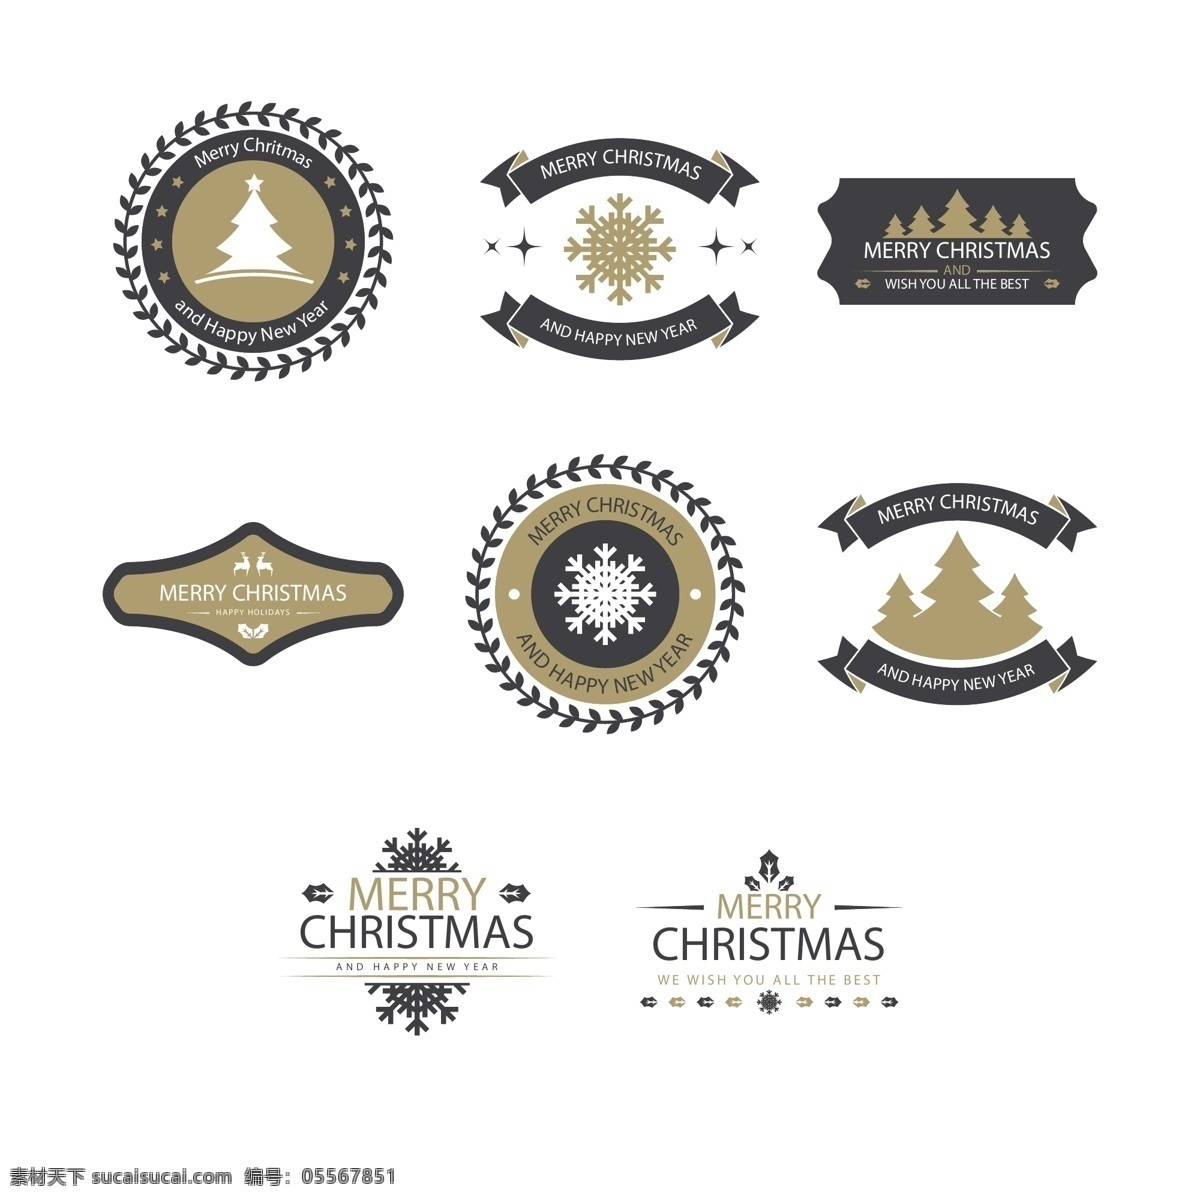 创意 英文 圣诞节 标签 雪花 矢量素材 圣诞树 驯鹿